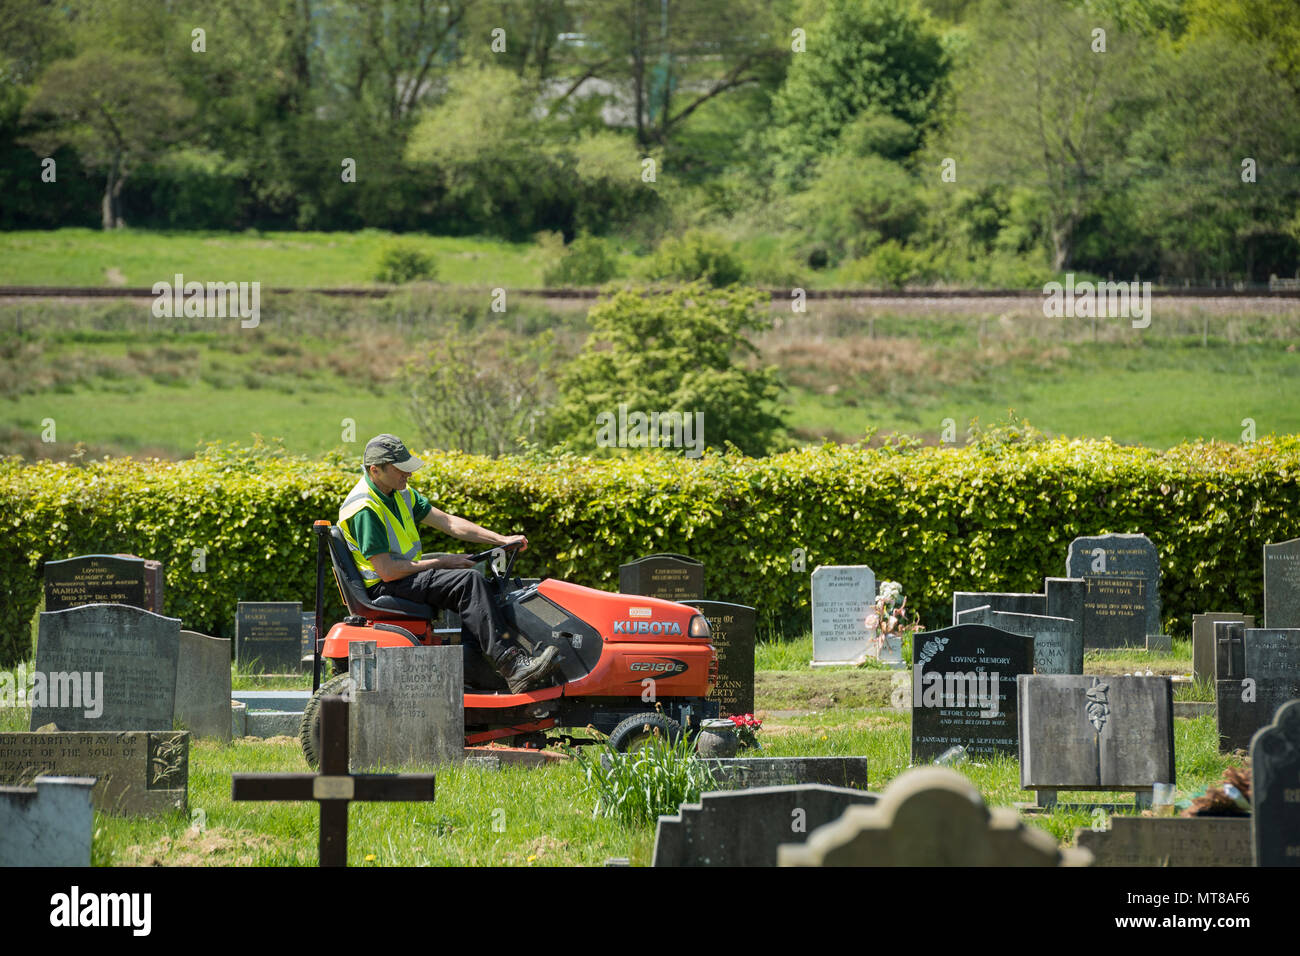 Homme au travail (empoyee de conseil local) siège au tour sur tondeuse et coupe de l'herbe entre les pierres tombales du cimetière - Guiseley, West Yorkshire, Angleterre, Royaume-Uni. Banque D'Images